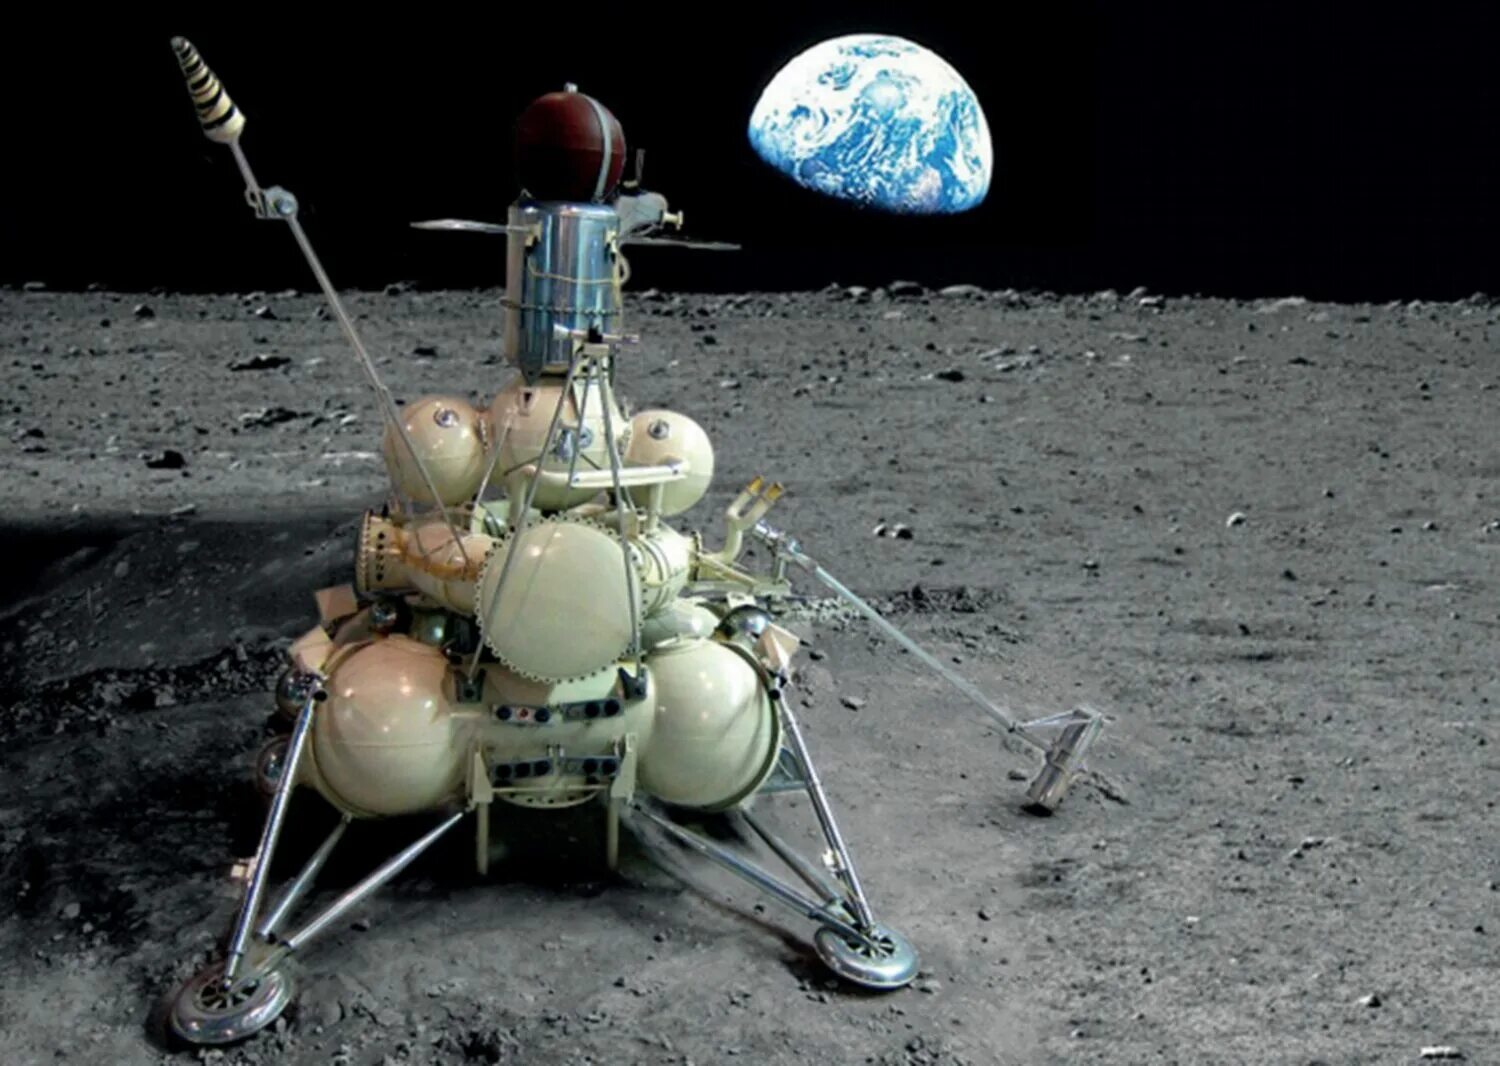 Первые космические аппараты ссср. Советская автоматическая межпланетная станция "Луна-24". Автрматическаямежпланетнаястанциялуна2. Луна-16 автоматическая межпланетная станция. Луна-25 автоматическая межпланетная станция.